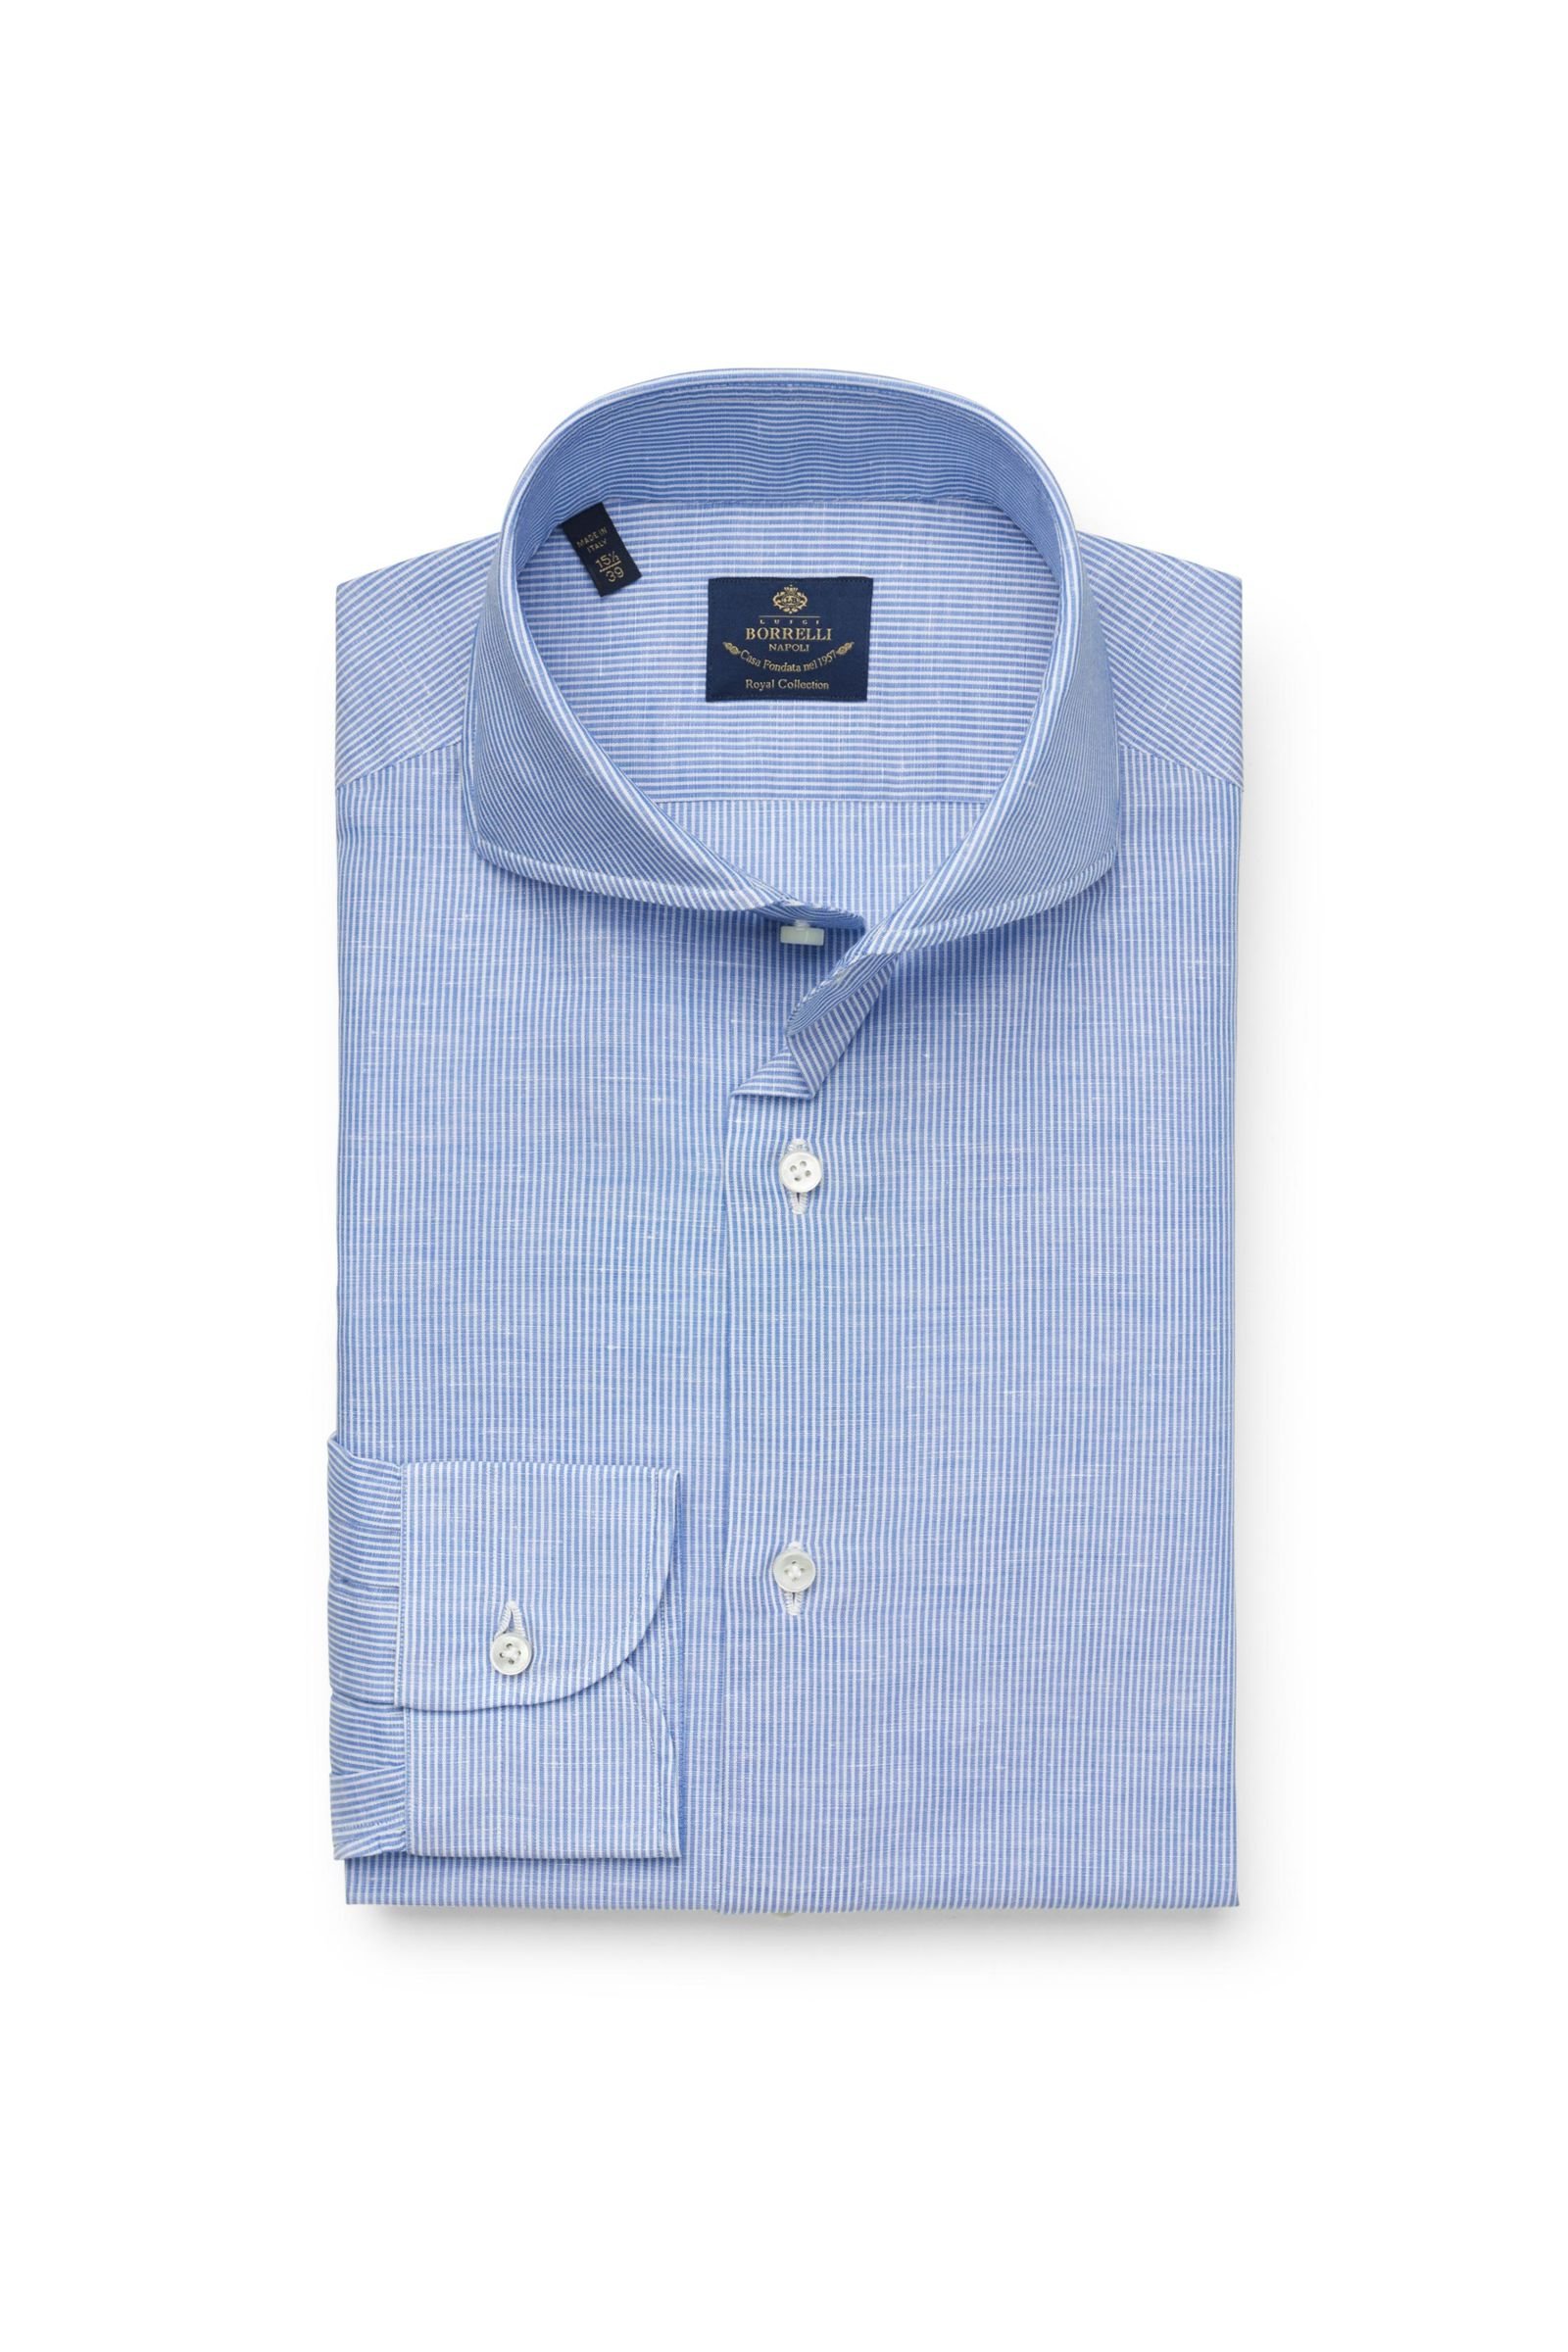 Business shirt 'Felice' shark collar blue/white striped